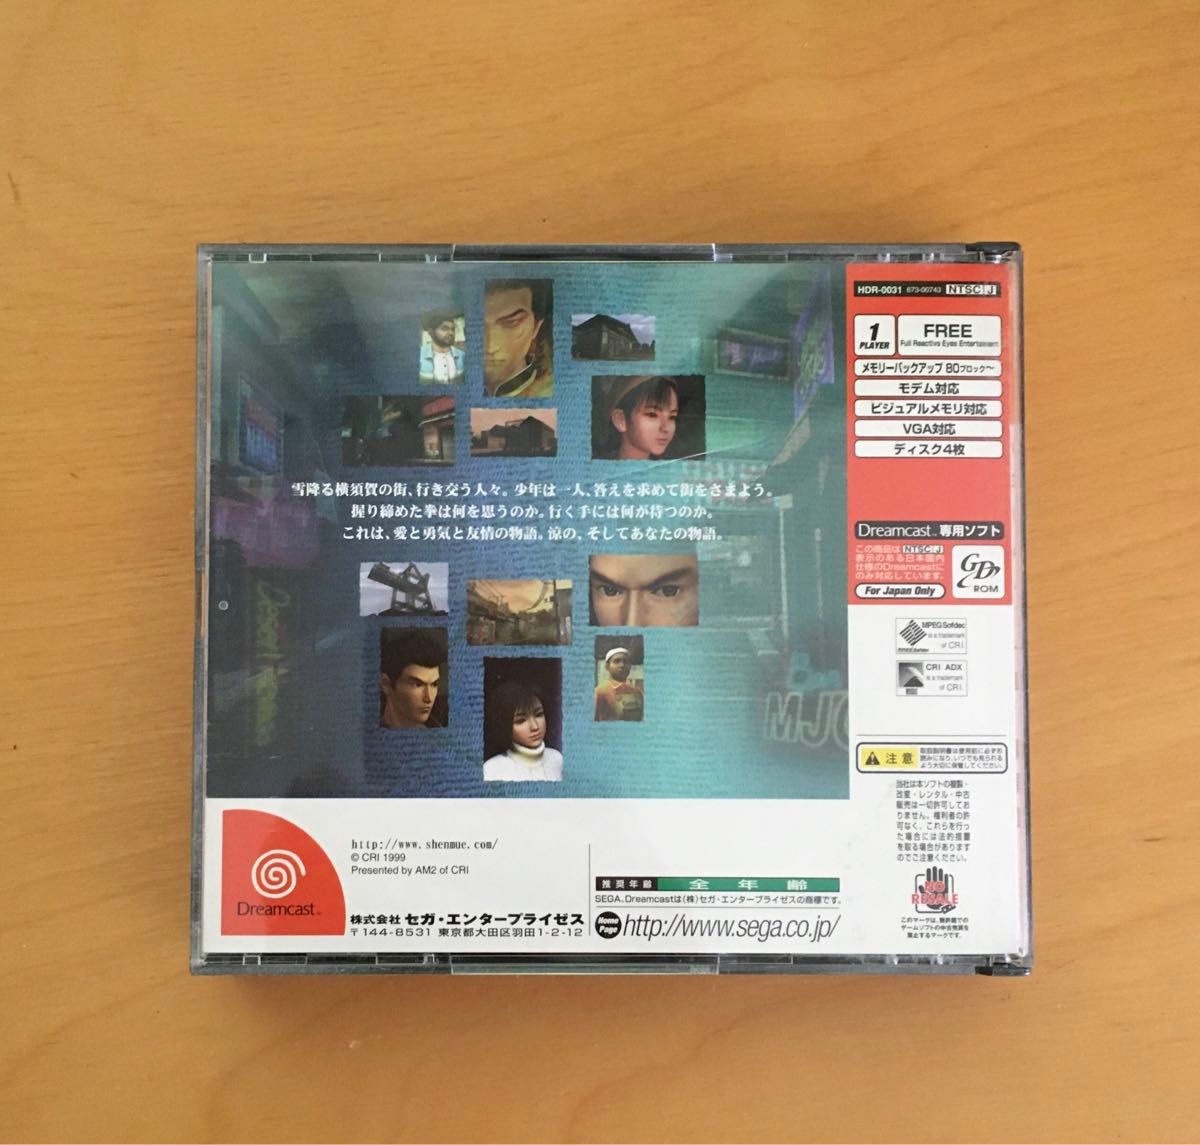 シェンムー 一章 横須賀 ドリームキャスト専用ソフト セガ・エンタープライズ HDR-0031 Dreamcast SEGA 